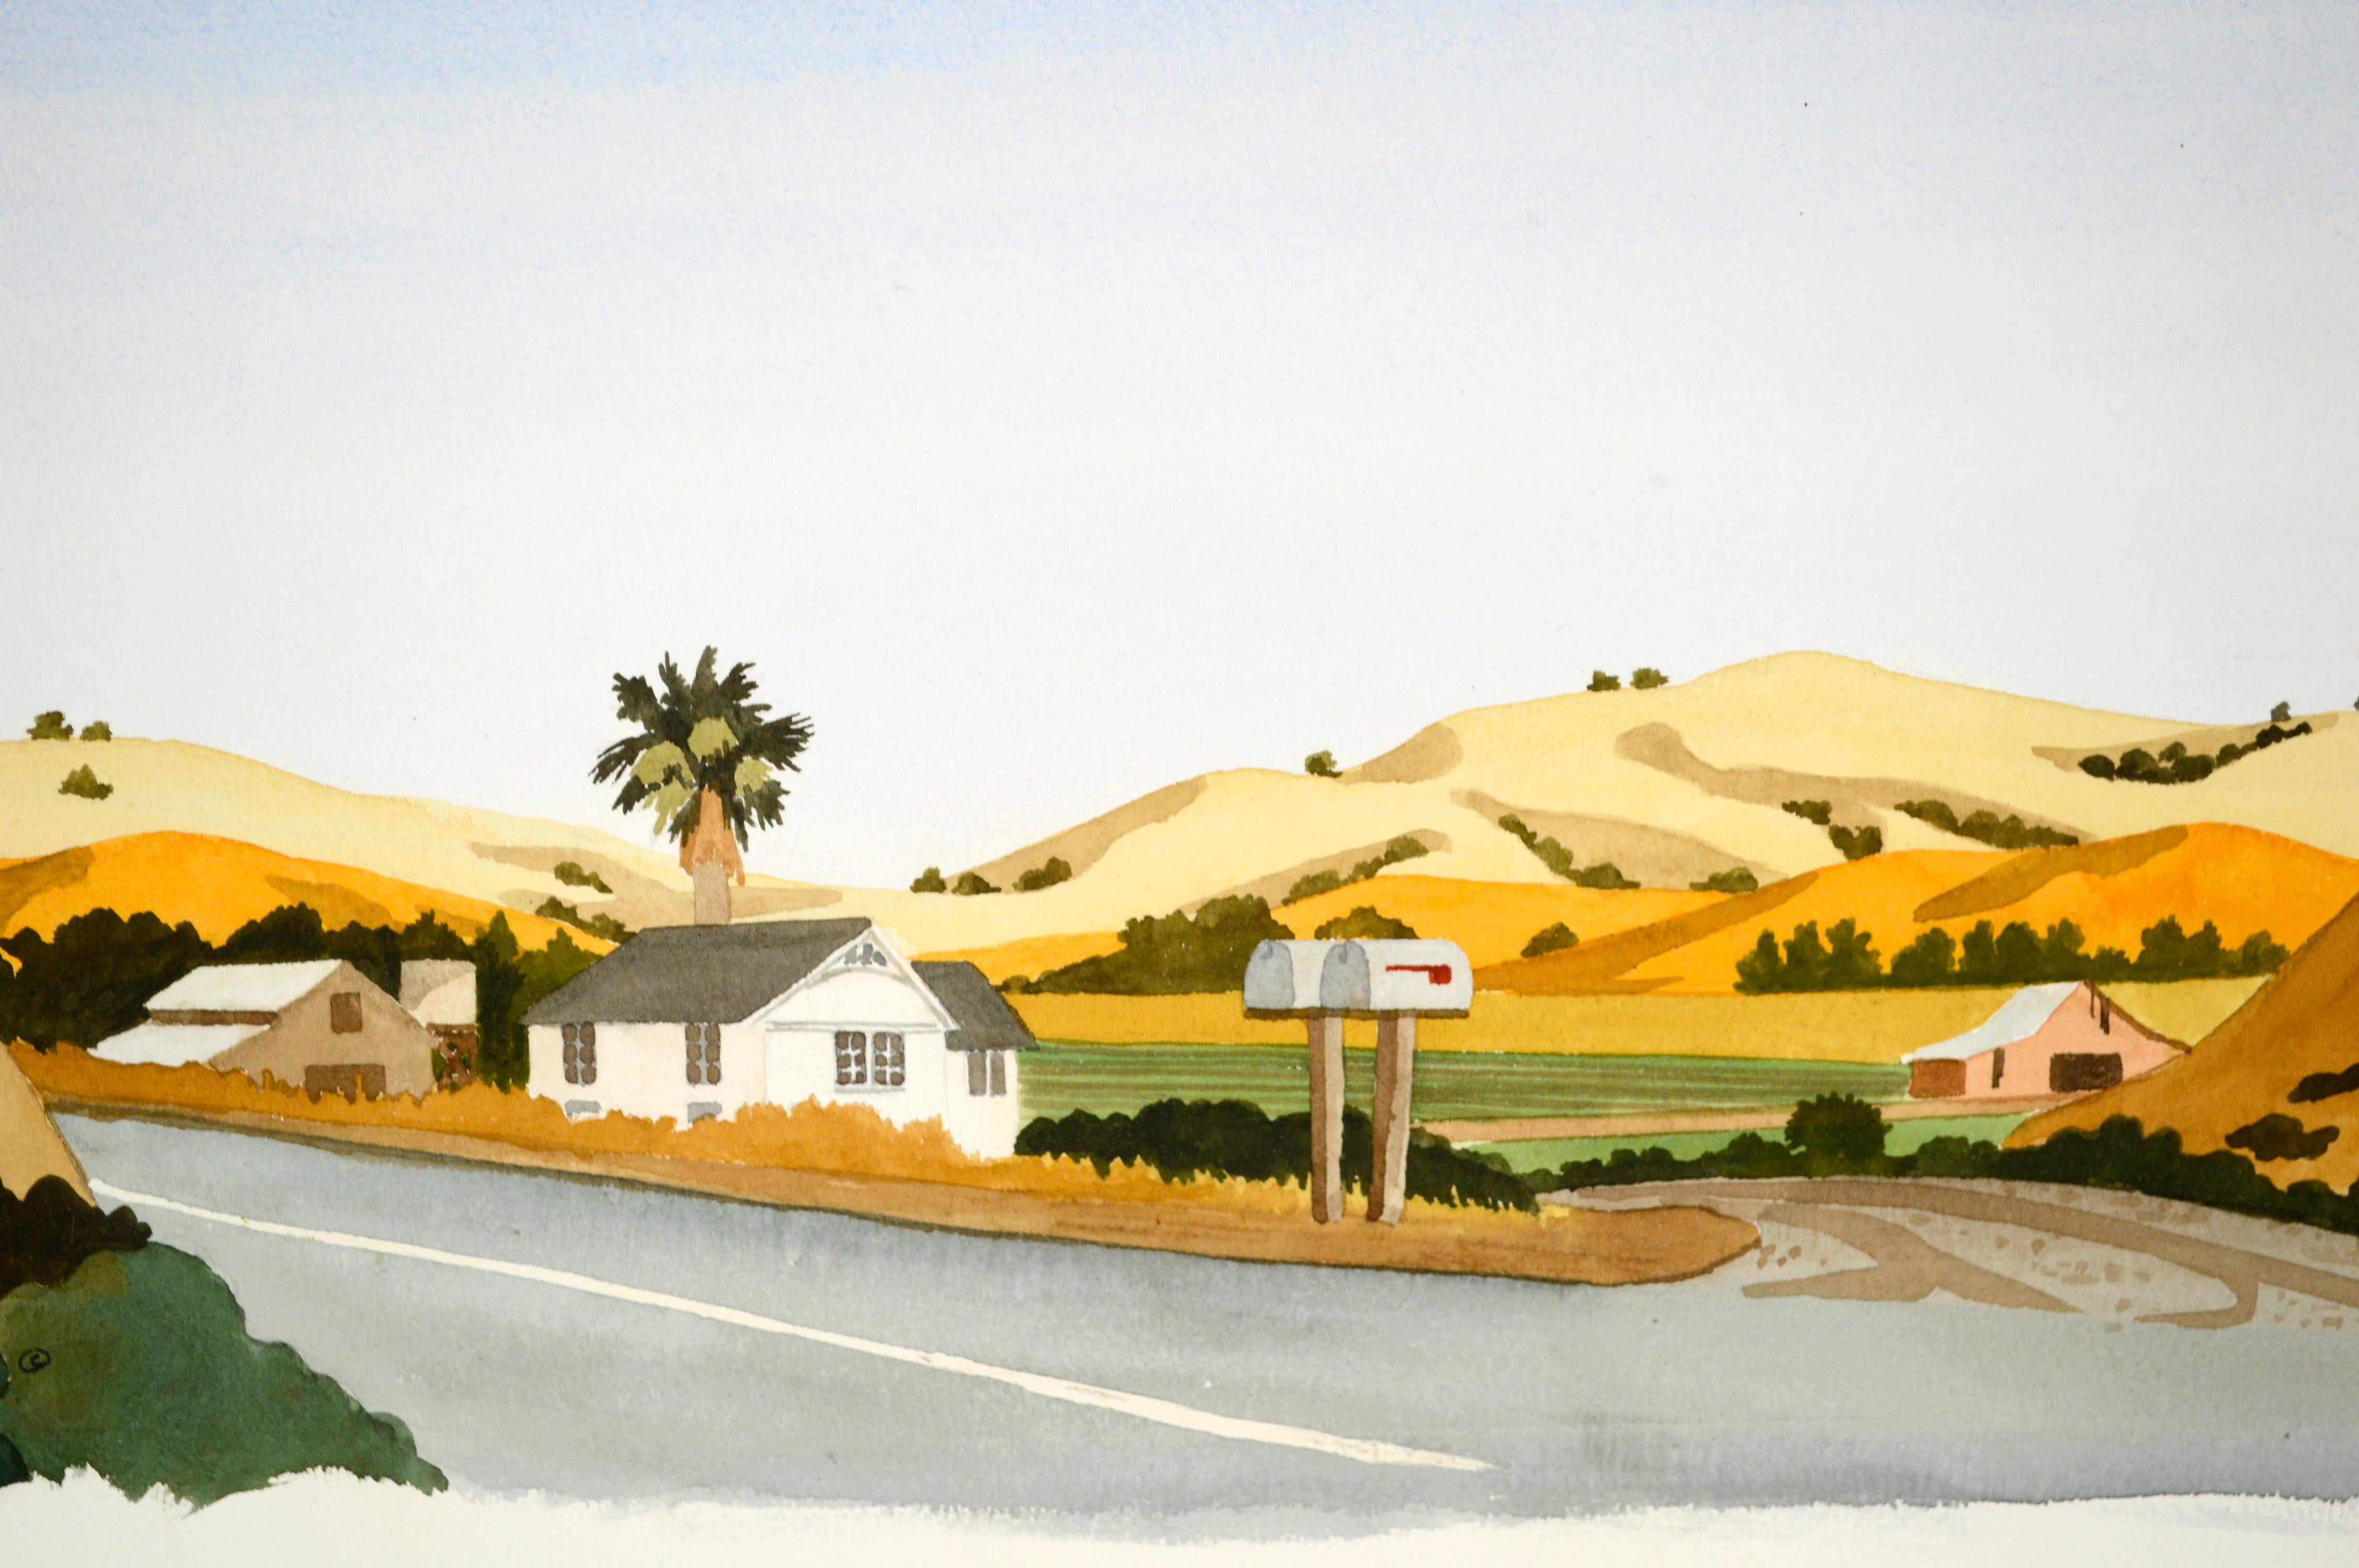 Aquarell auf Papier von San Jose Hills  (Grau), Landscape Art, von Robert Sugita